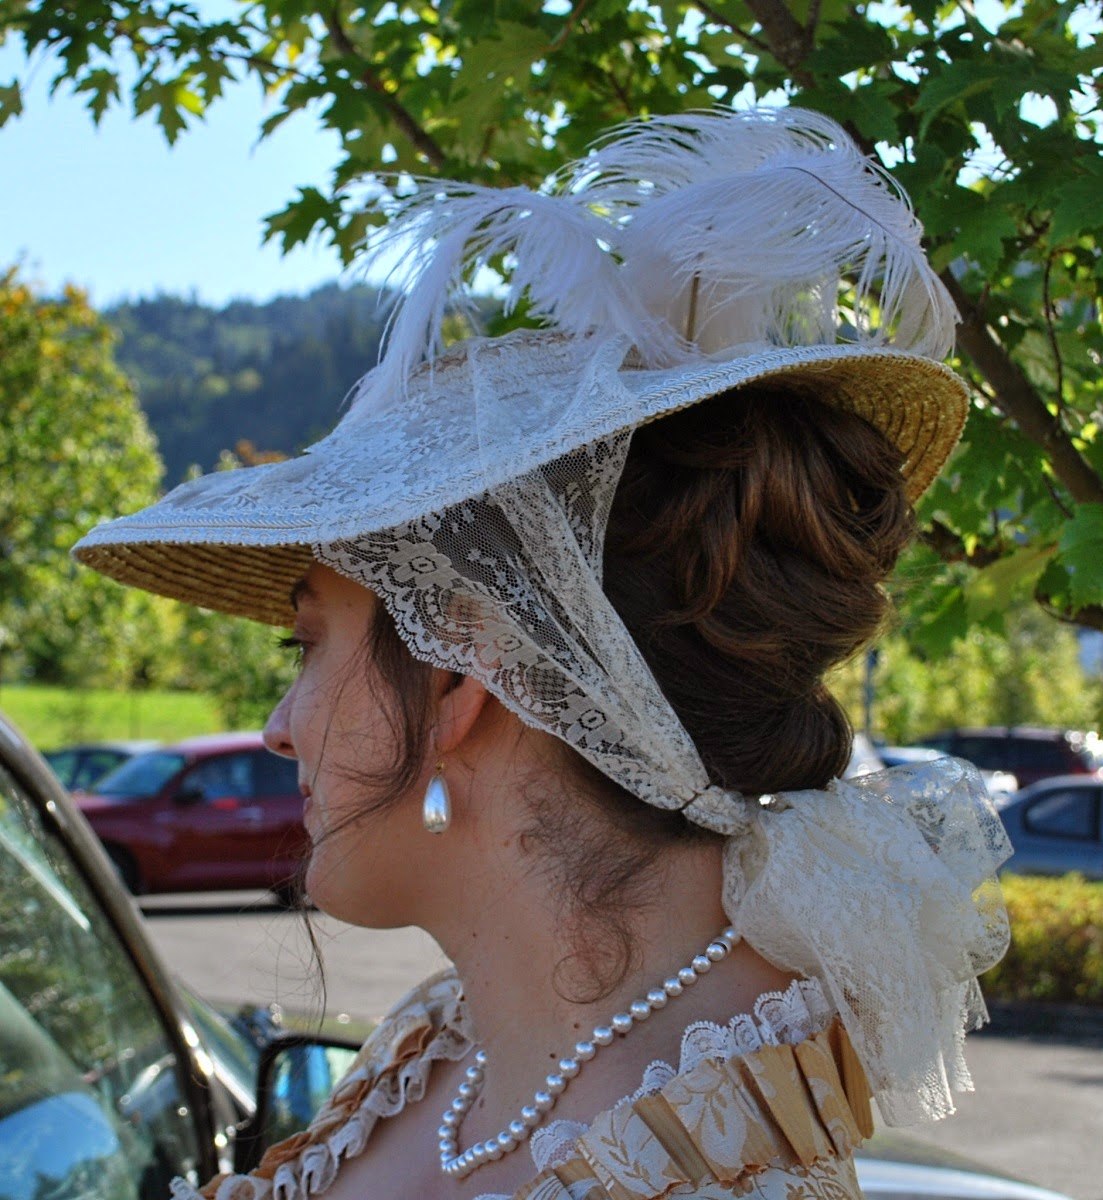 По верх платка была надета шляпа. Шапо Бержер. Шляпы 18 века. Шляпка в стиле 18 века. Шляпы 18 века женские.